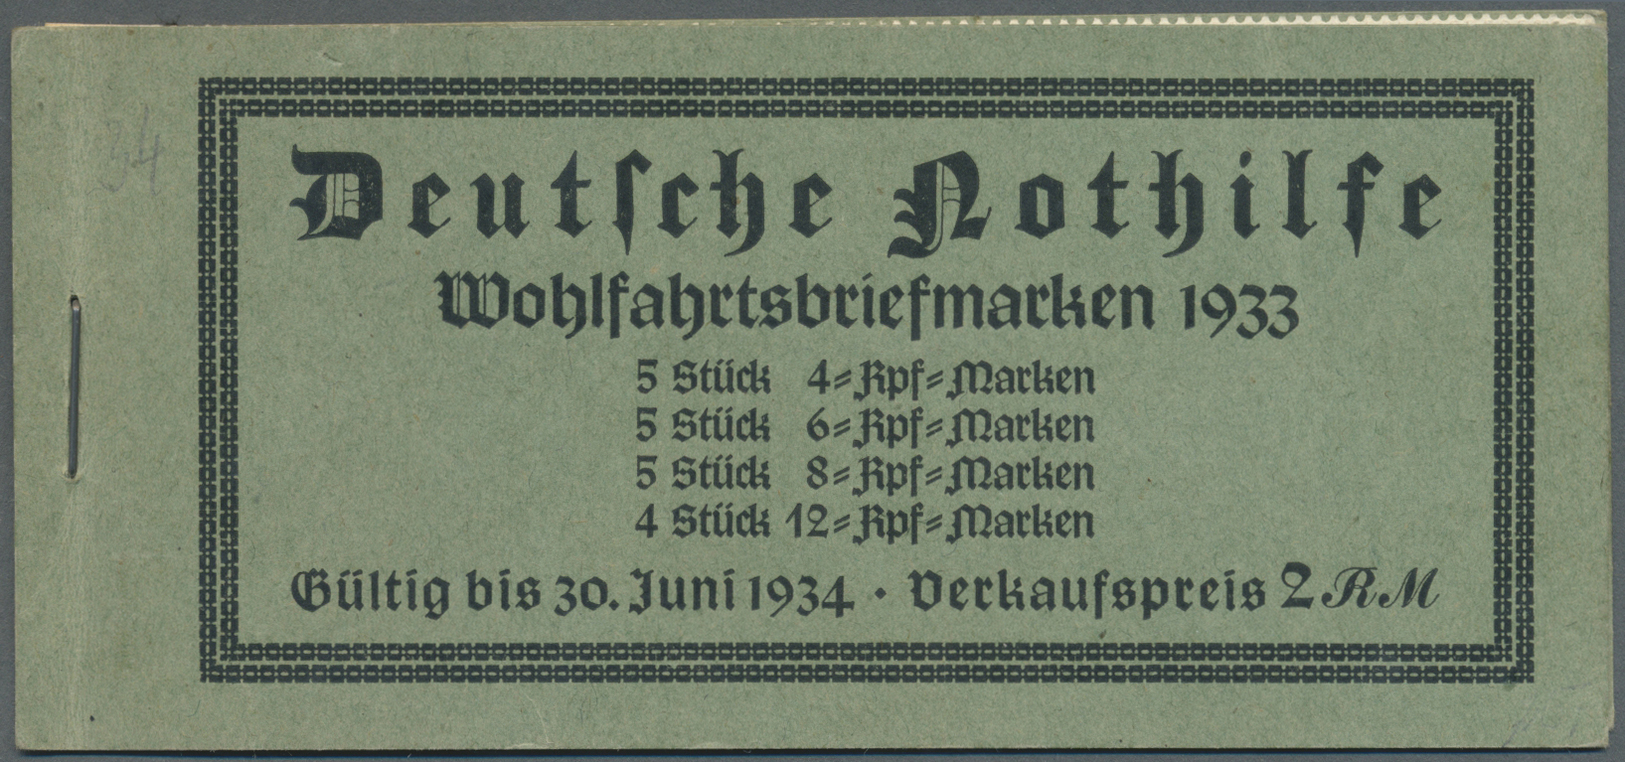 * Deutsches Reich - Markenheftchen: 1933, Markenheftchen Wagner, Anhaftungen, Gummifehler, Bug Im Vord - Postzegelboekjes